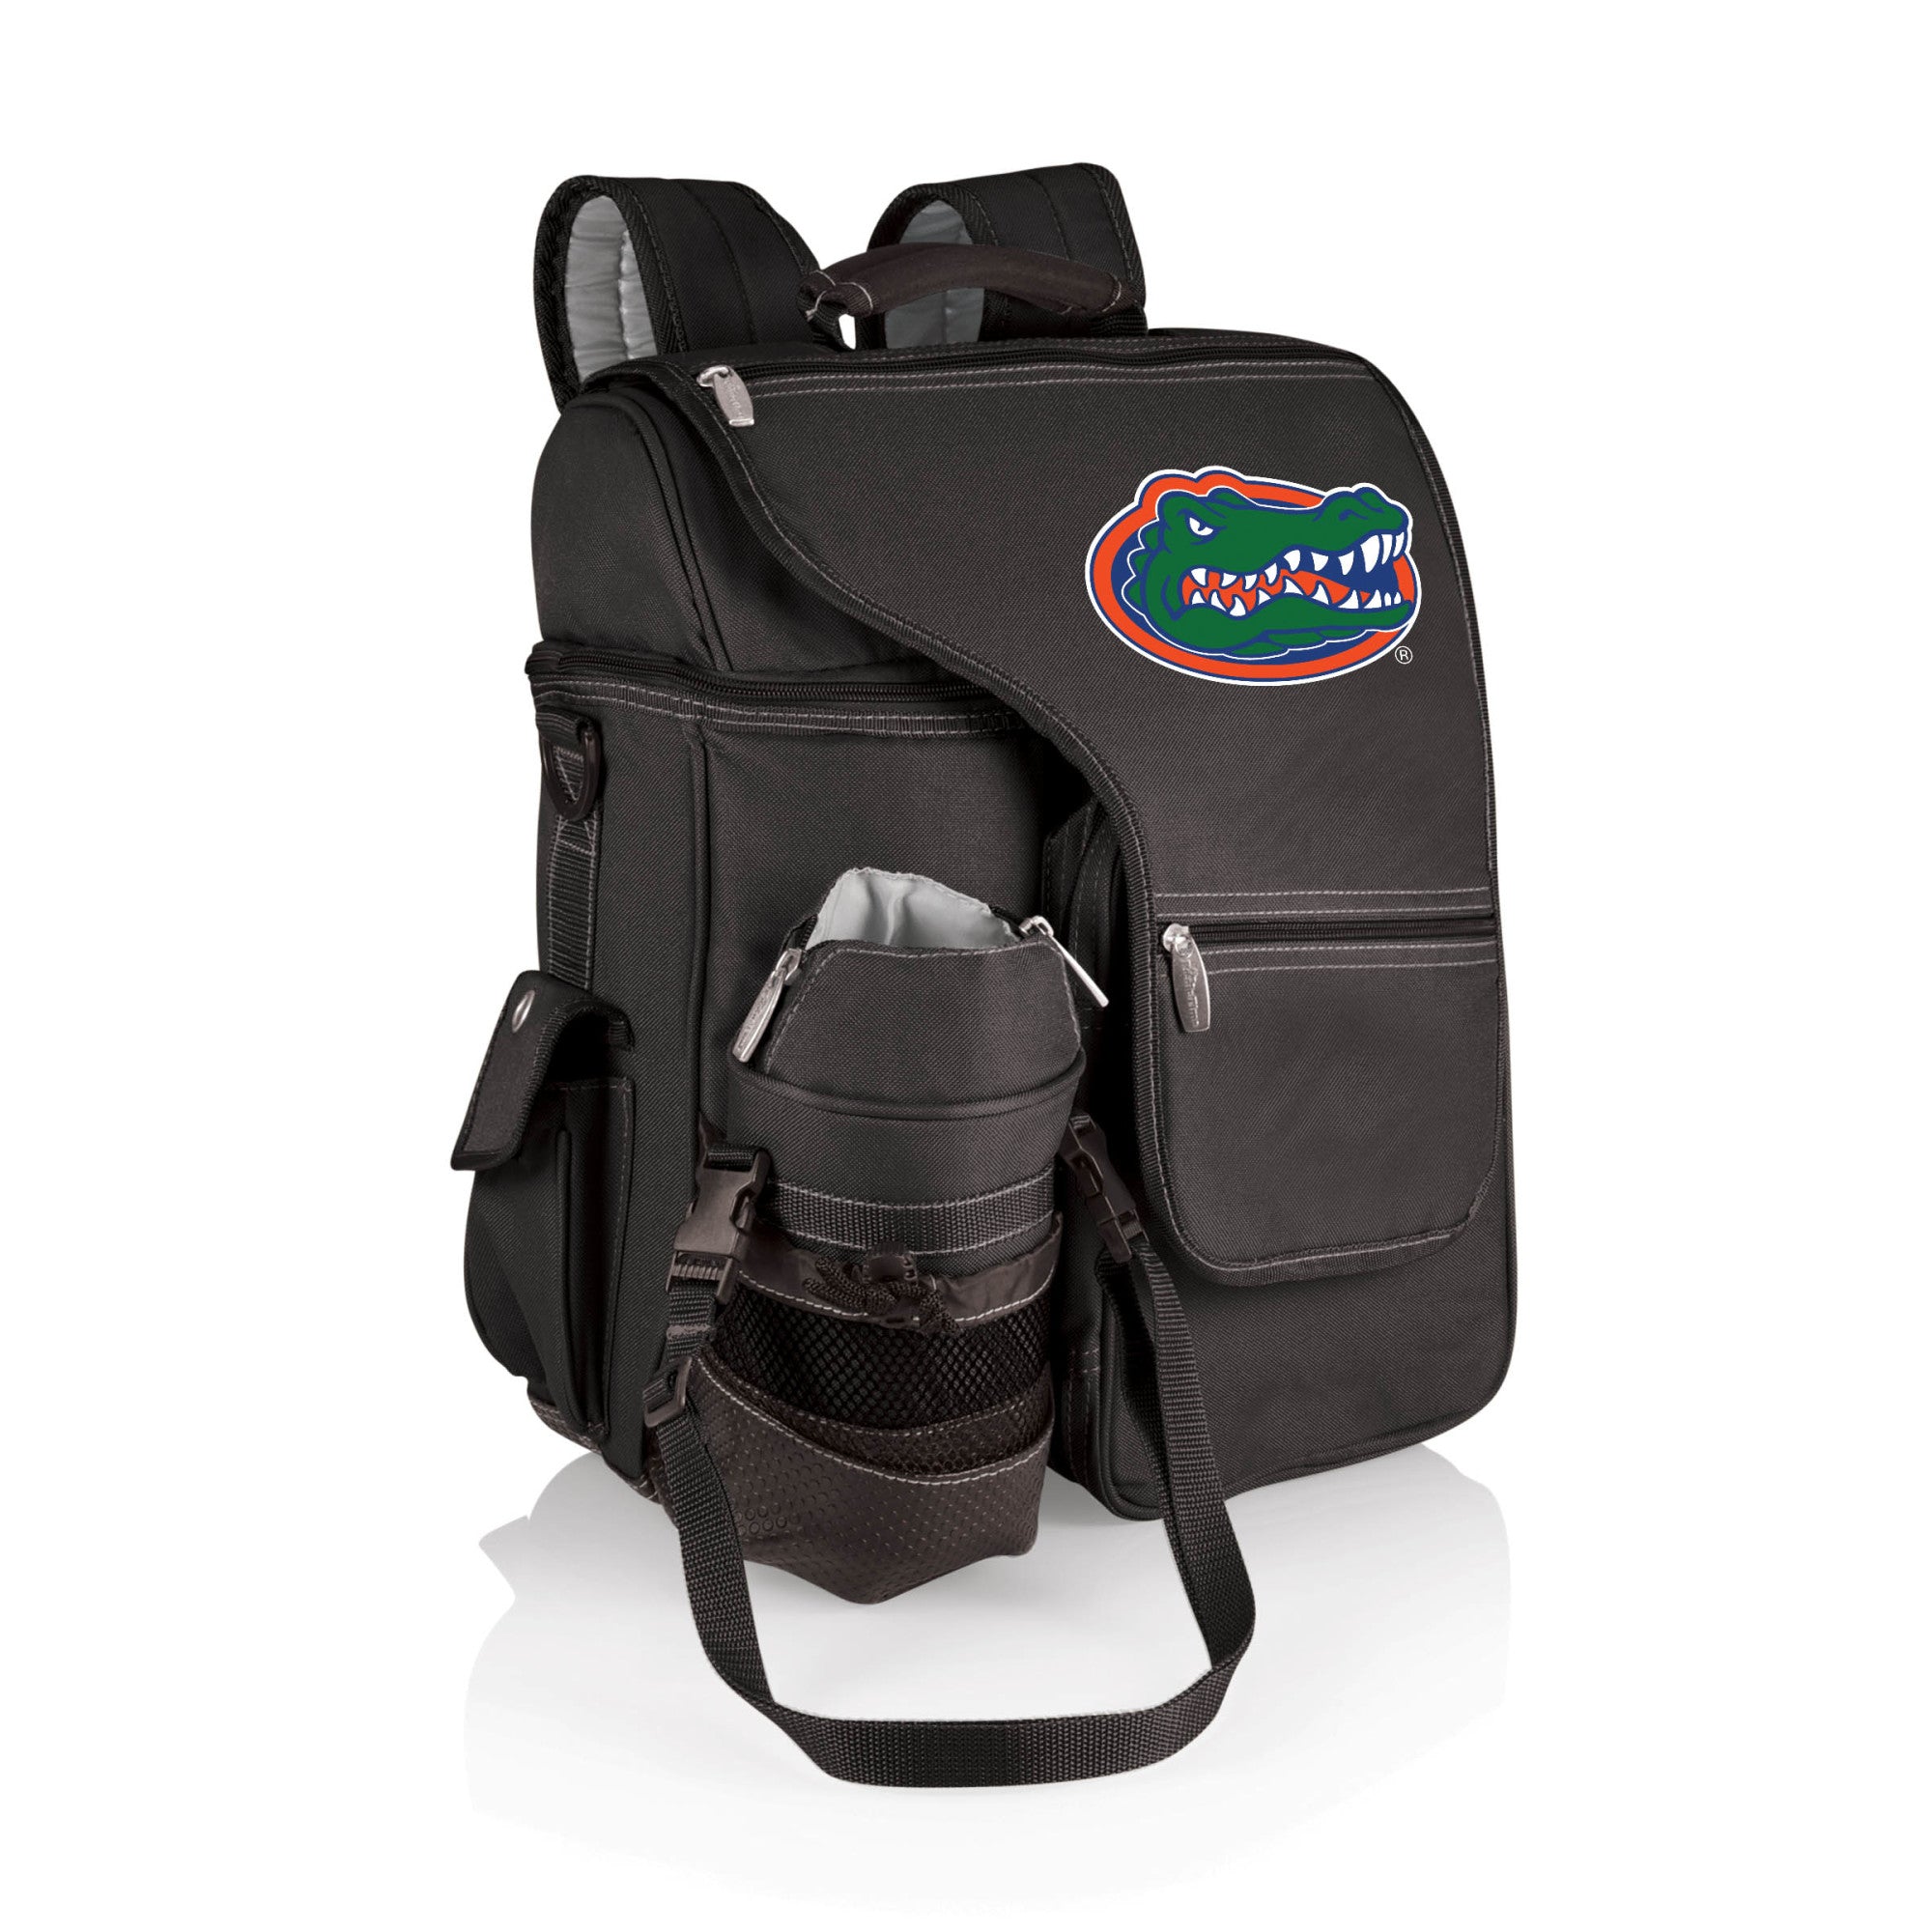 Florida Gators - Turismo Travel Backpack Cooler